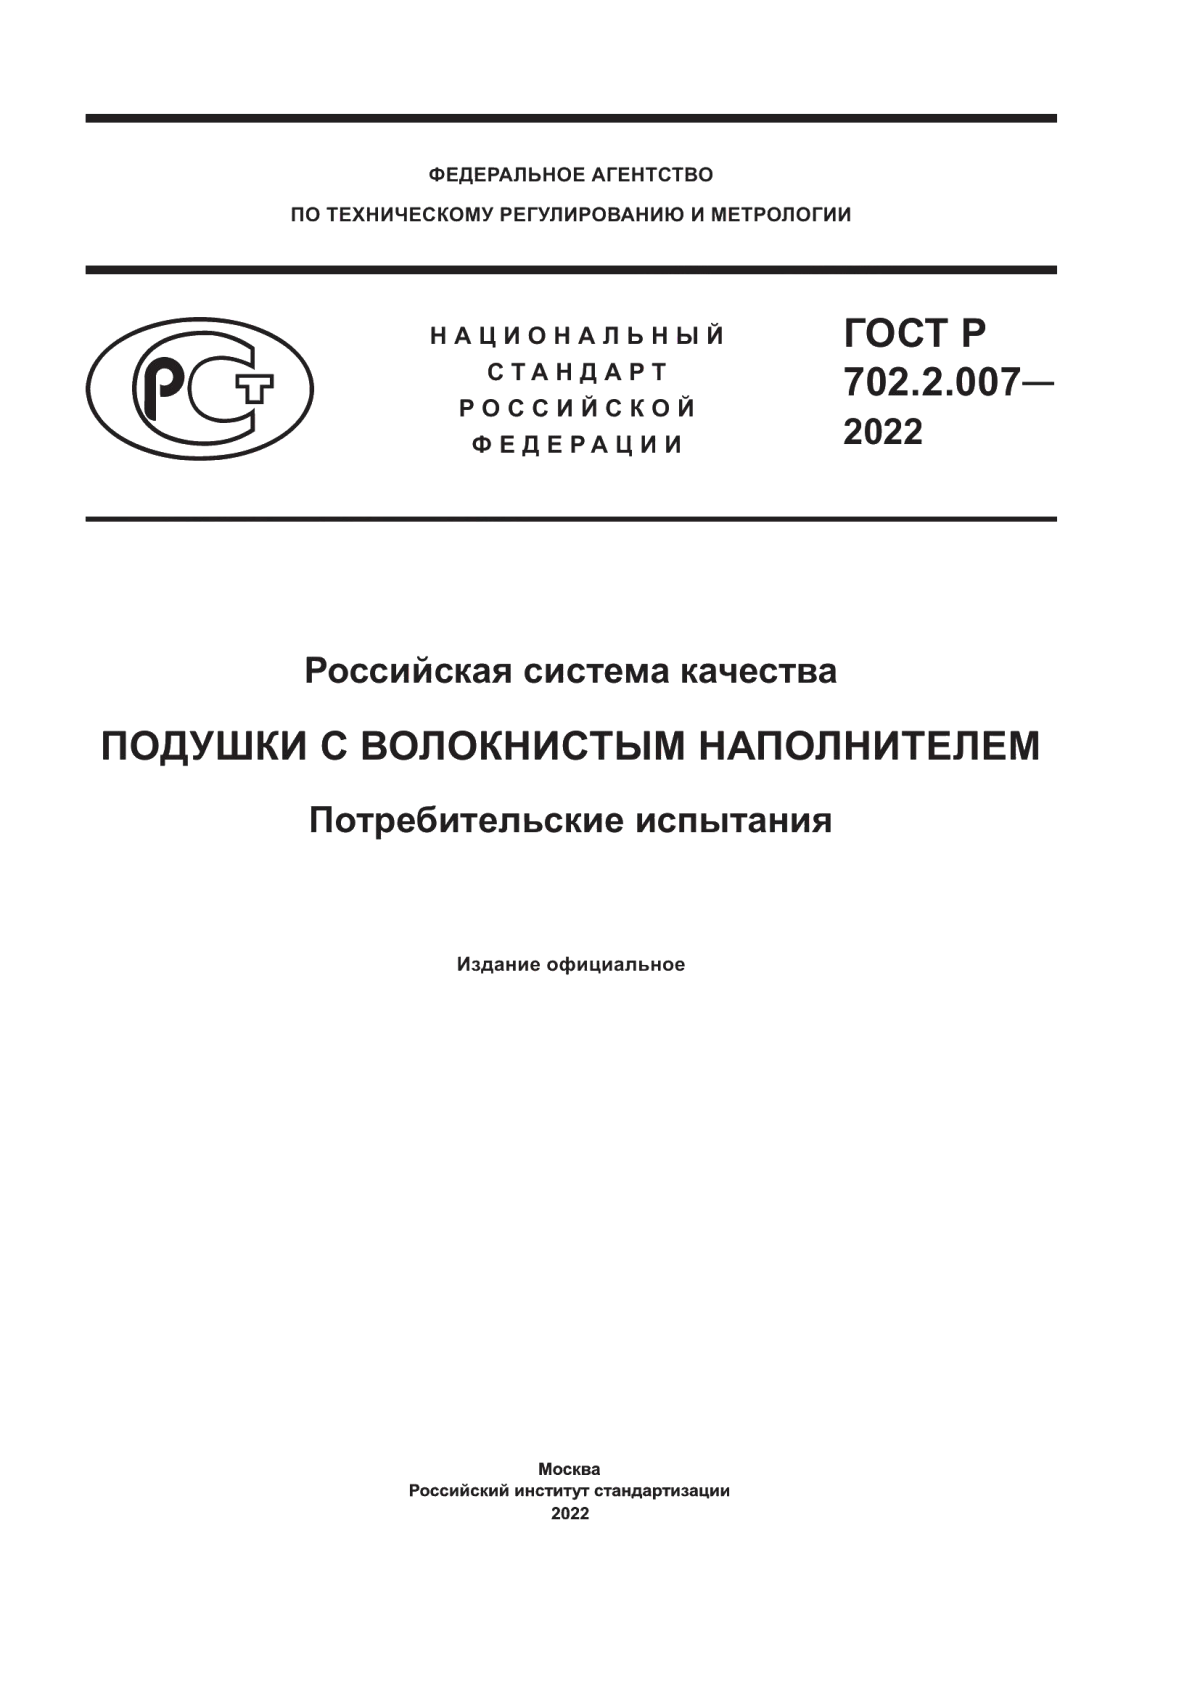 ГОСТ Р 702.2.007-2022 Российская система качества. Подушки с волокнистым наполнителем. Потребительские испытания